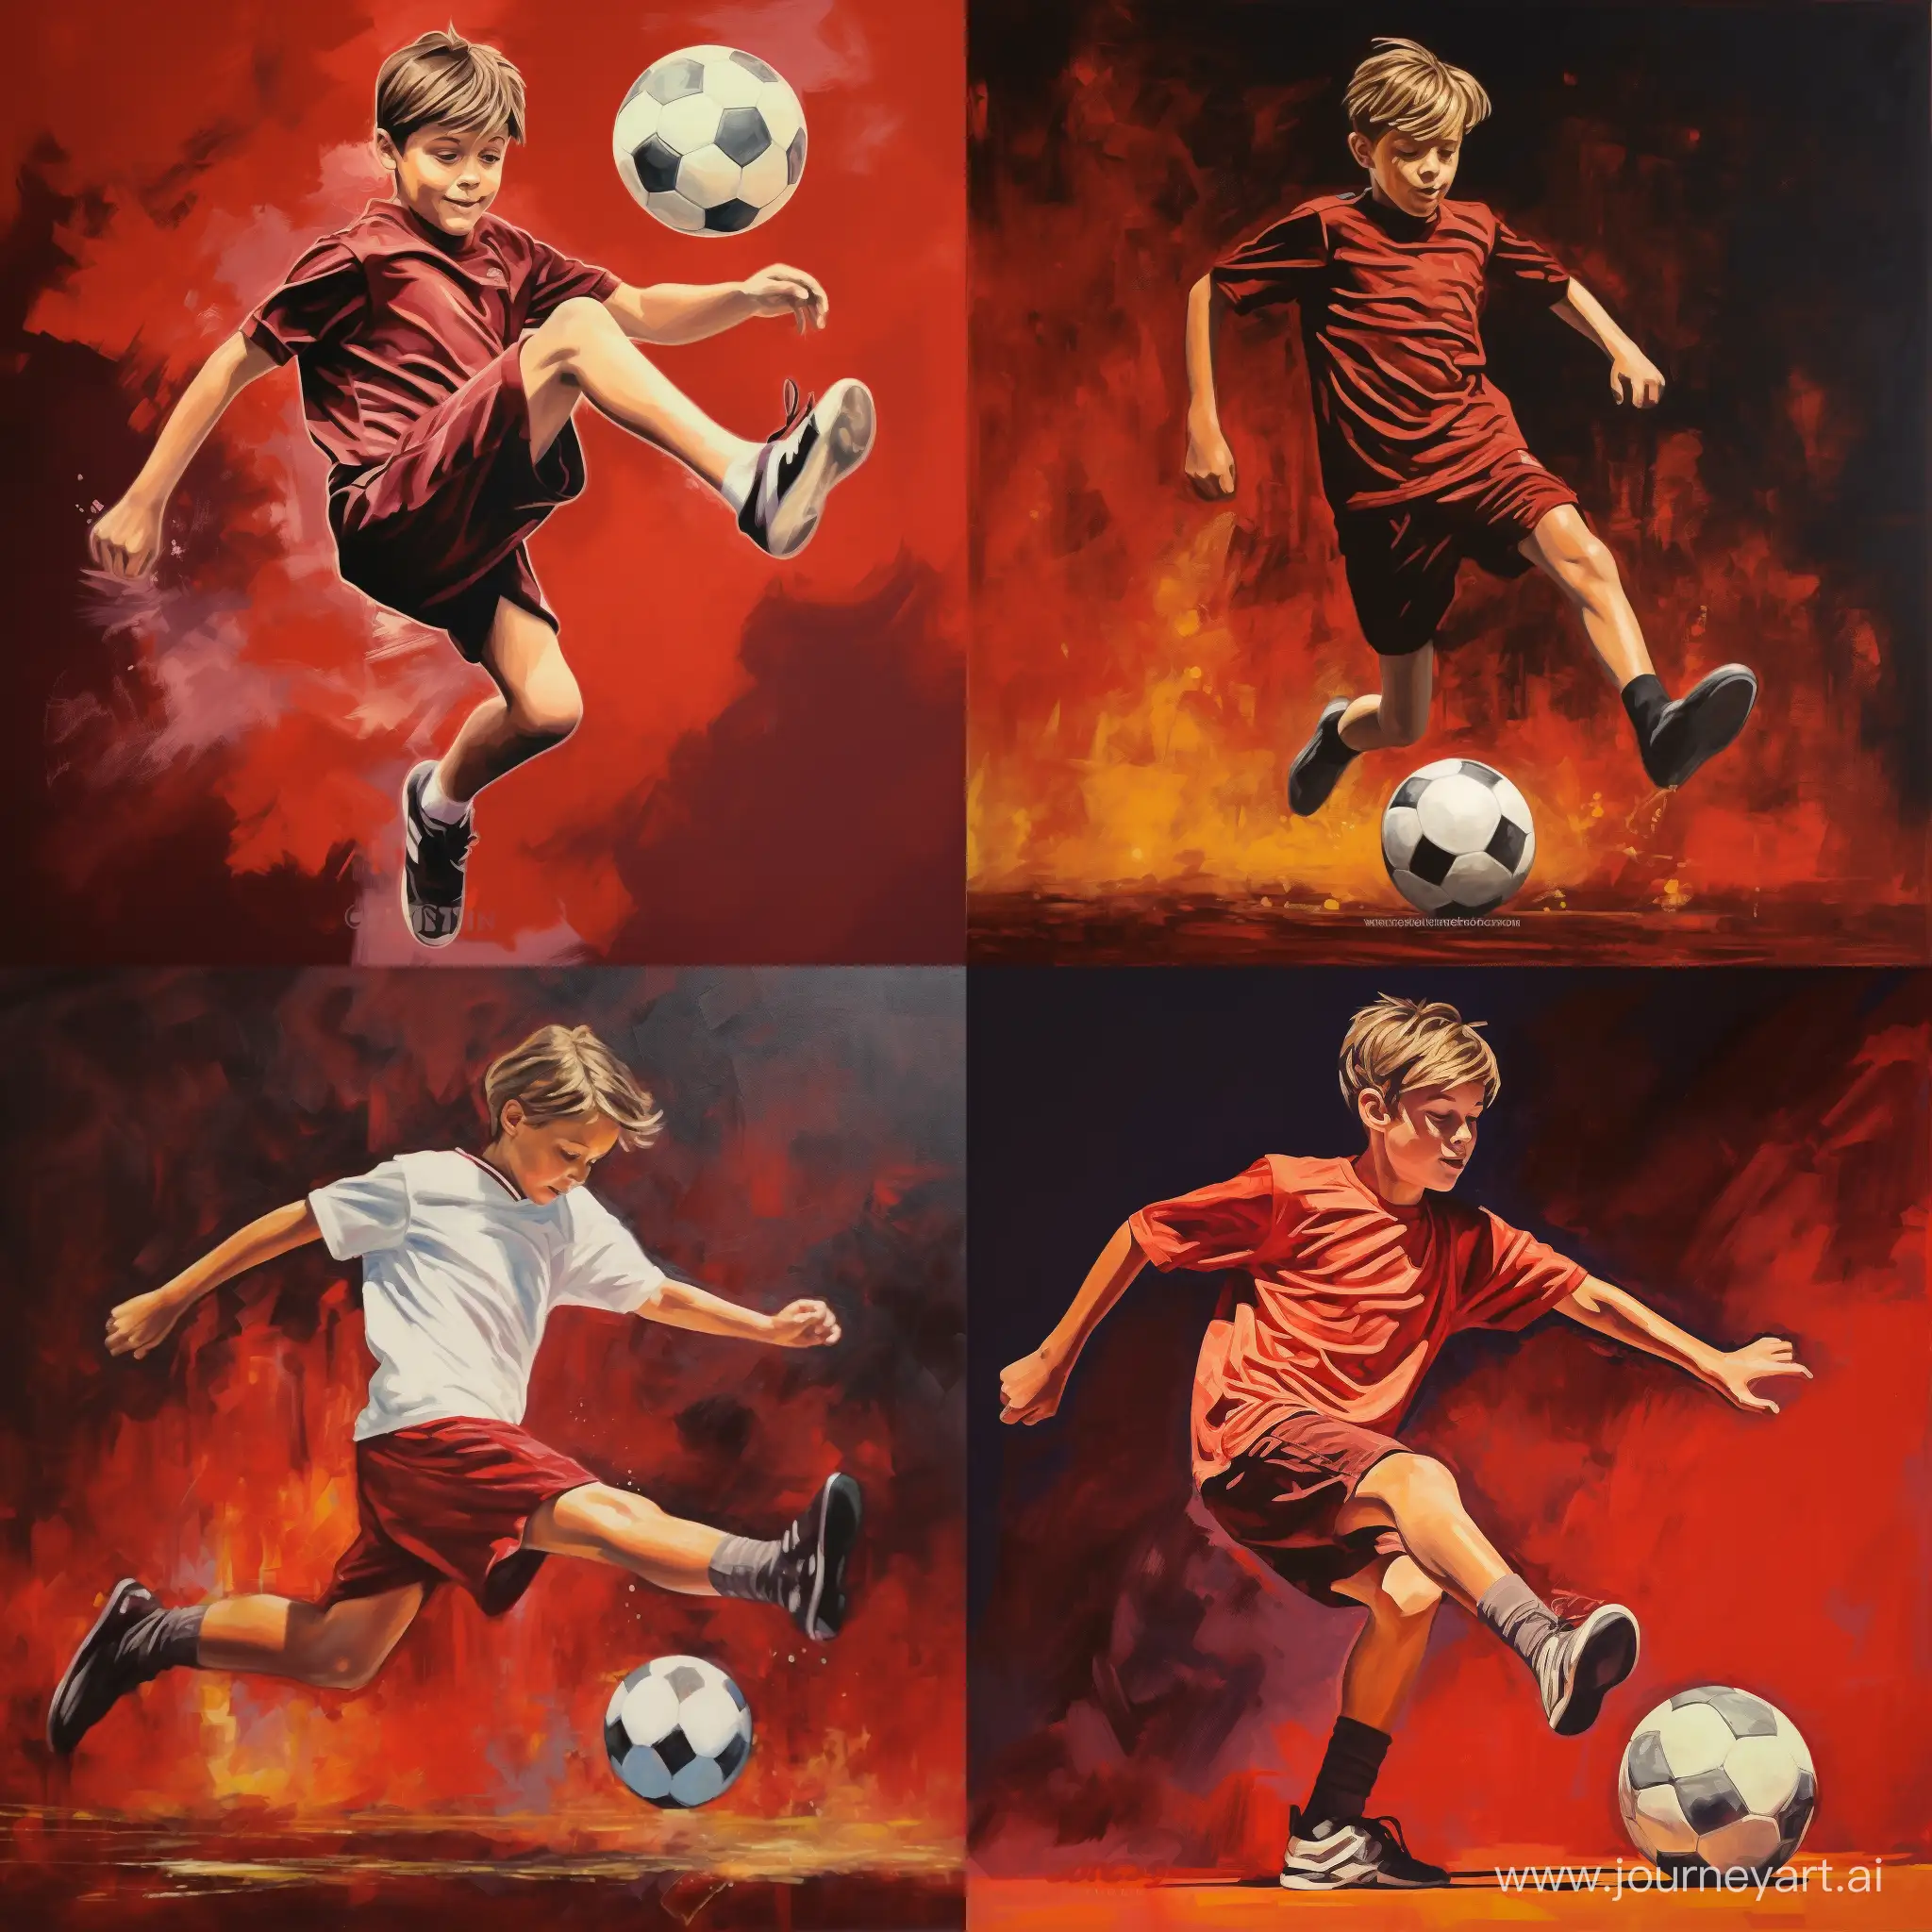 Юноша 10 лет, размахивается ногой для удара по футбольному мячу на тёмно-красном фоне. Сверху картинки оставить место для надписи